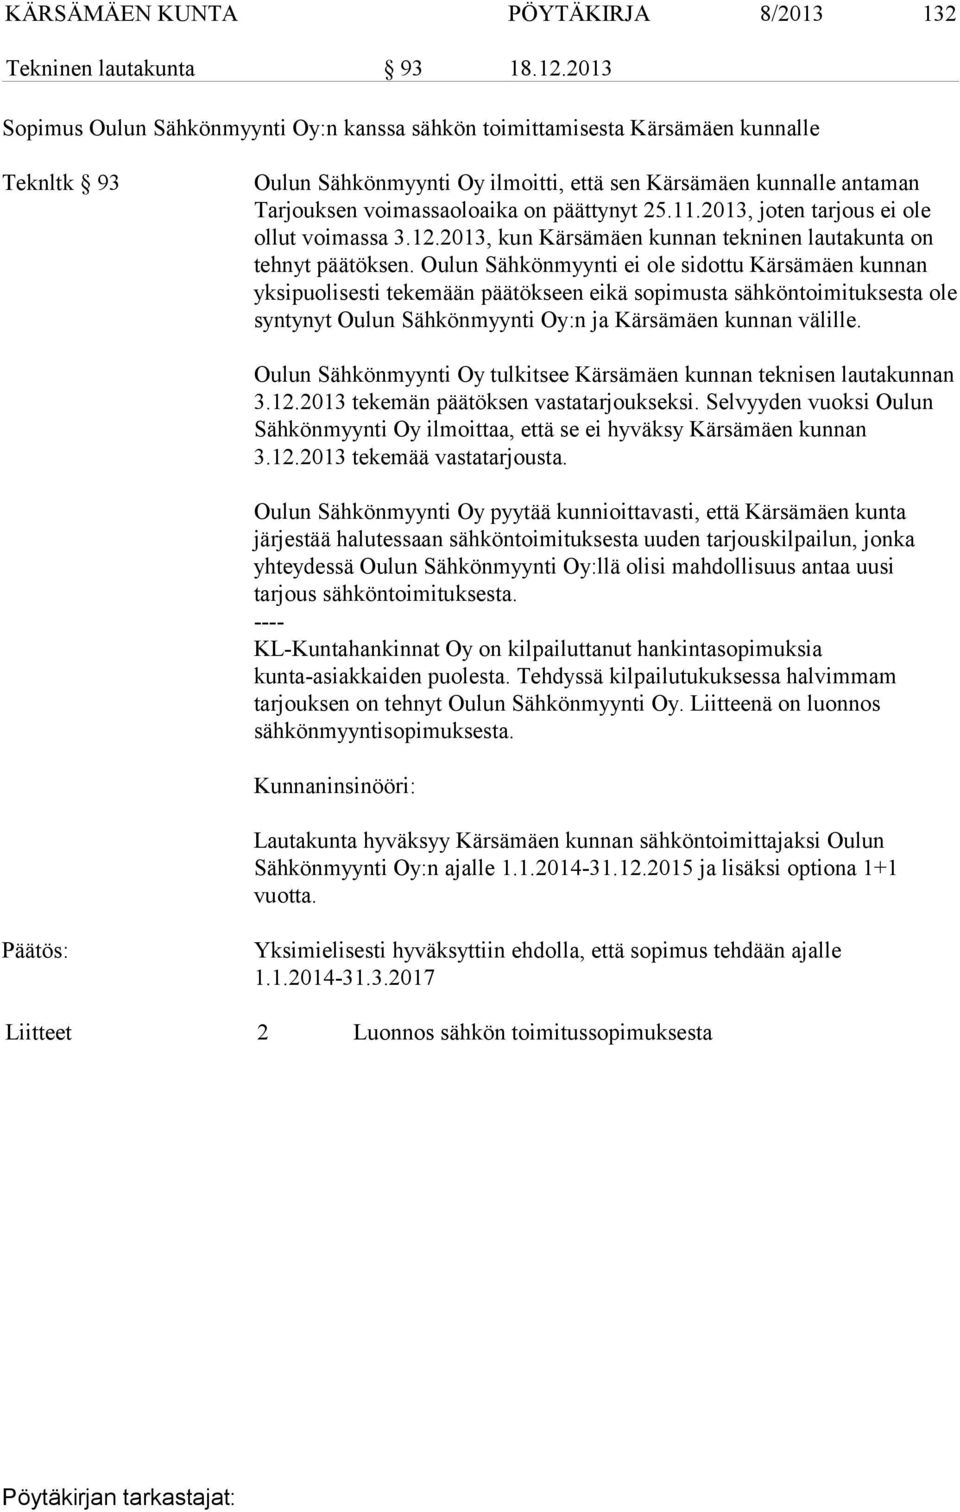 päättynyt 25.11.2013, joten tarjous ei ole ollut voimassa 3.12.2013, kun Kärsämäen kunnan tekninen lautakunta on tehnyt päätöksen.